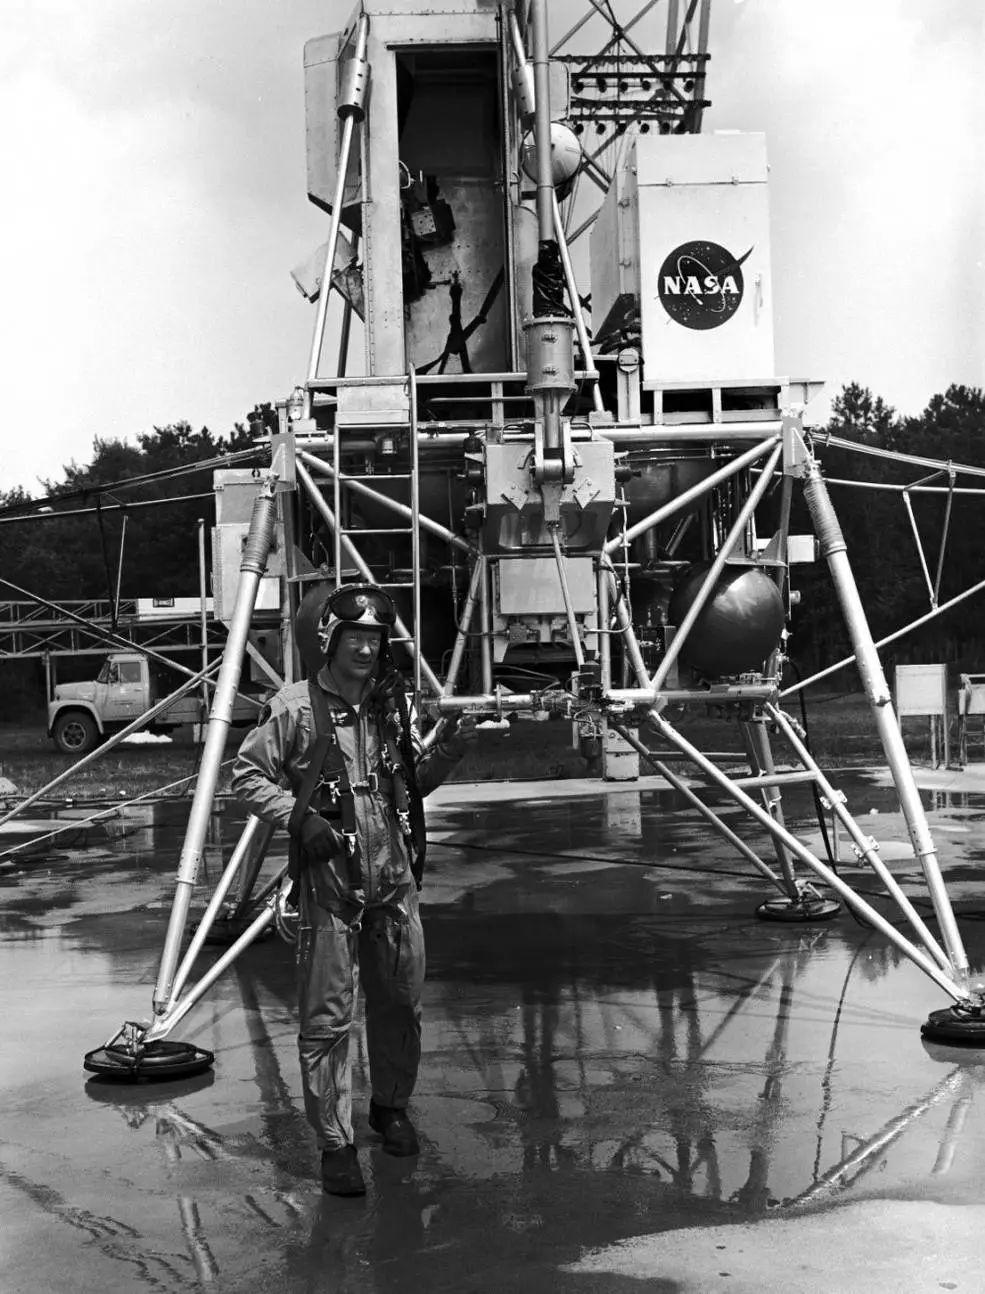 阿波罗11号的主要目标： “执行载人登月并安全返回”